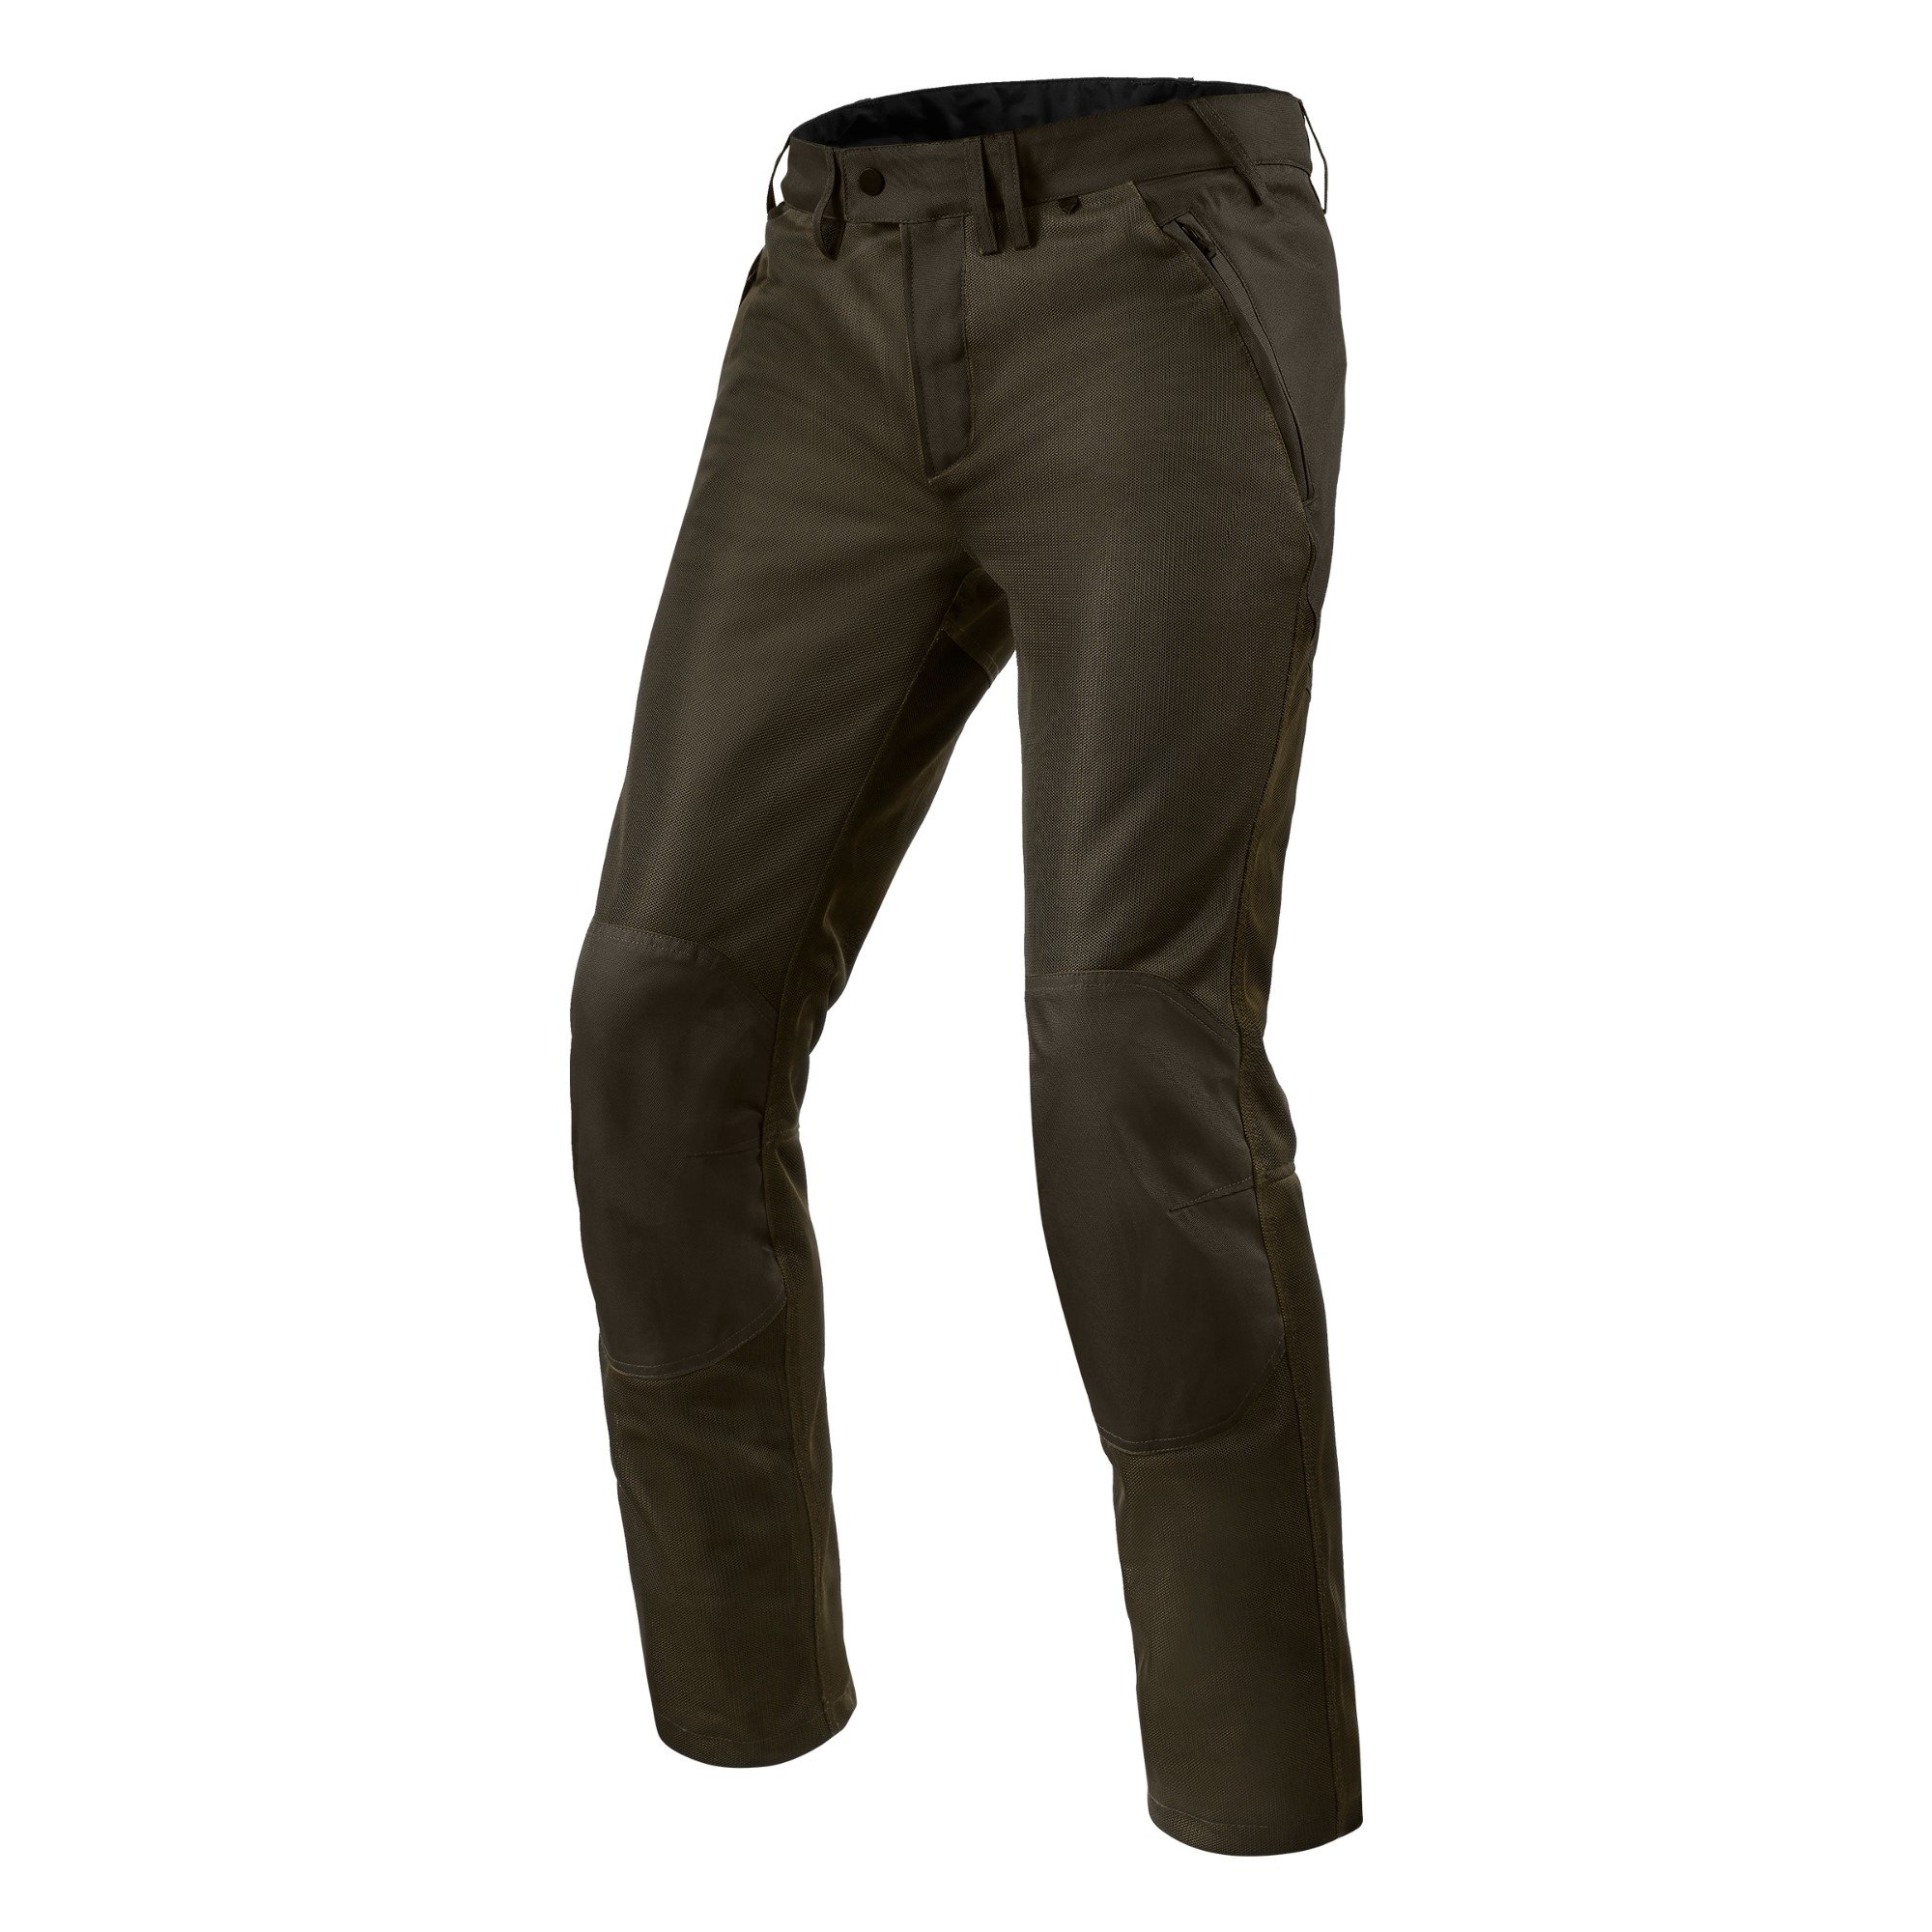 Image of EU REV'IT! Eclipse 2 Noir Olive Long Pantalon Taille S